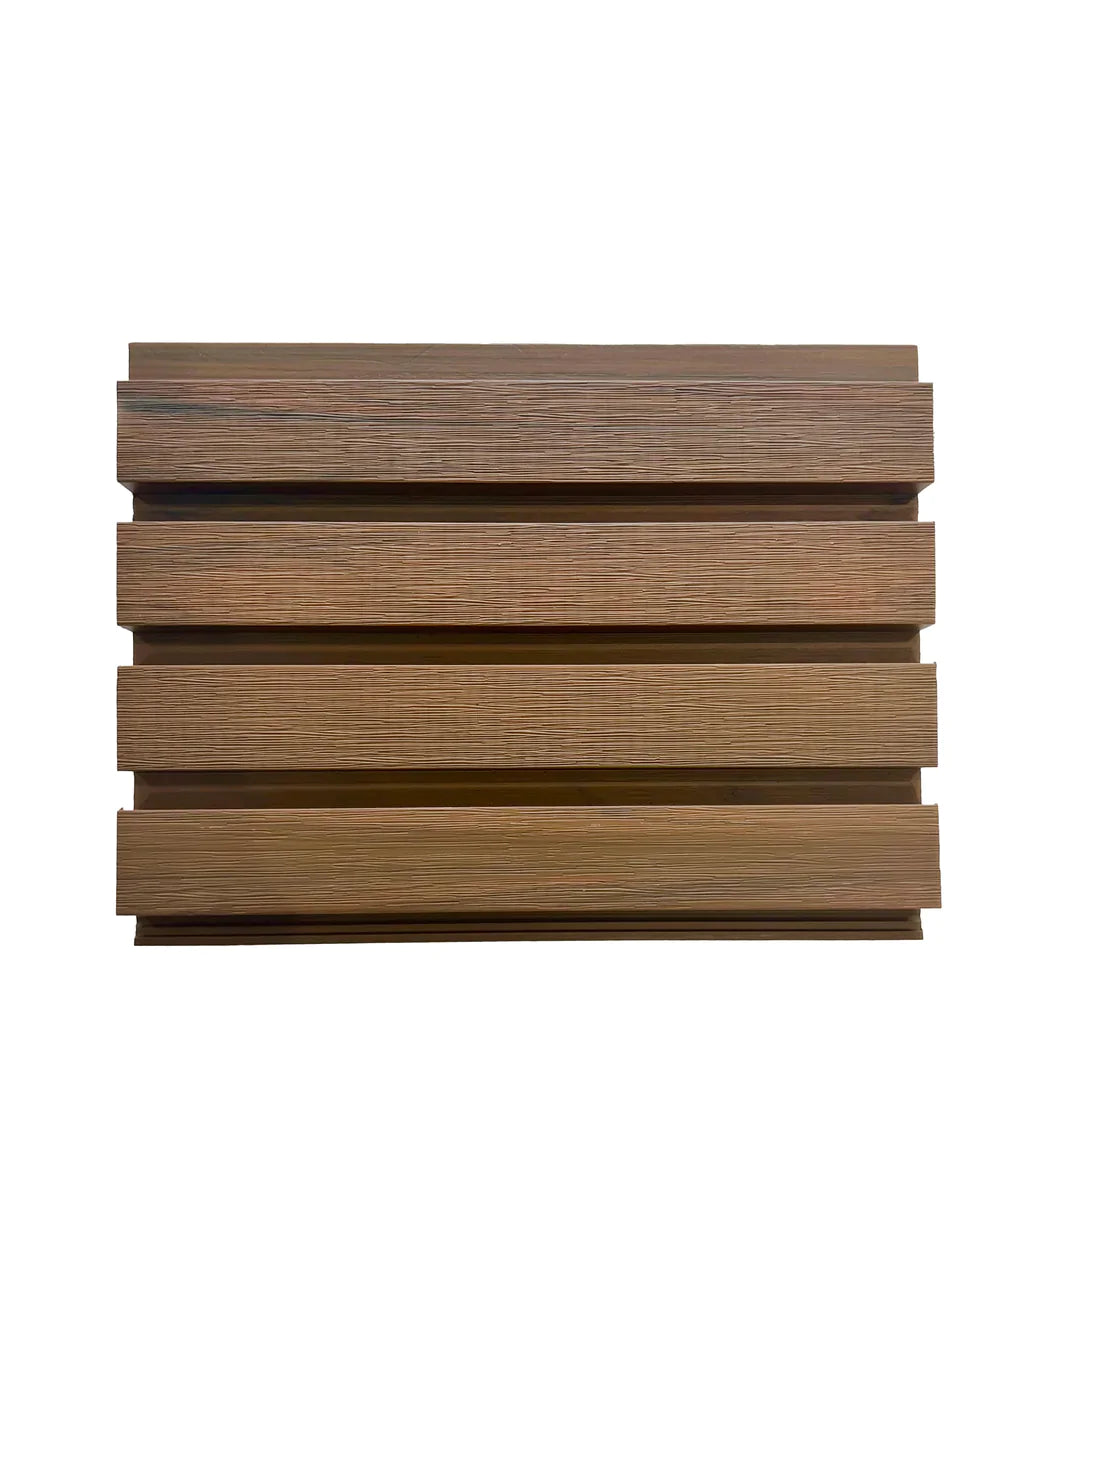 Composite Slatted Cladding Golden Oak Sample - Series 1